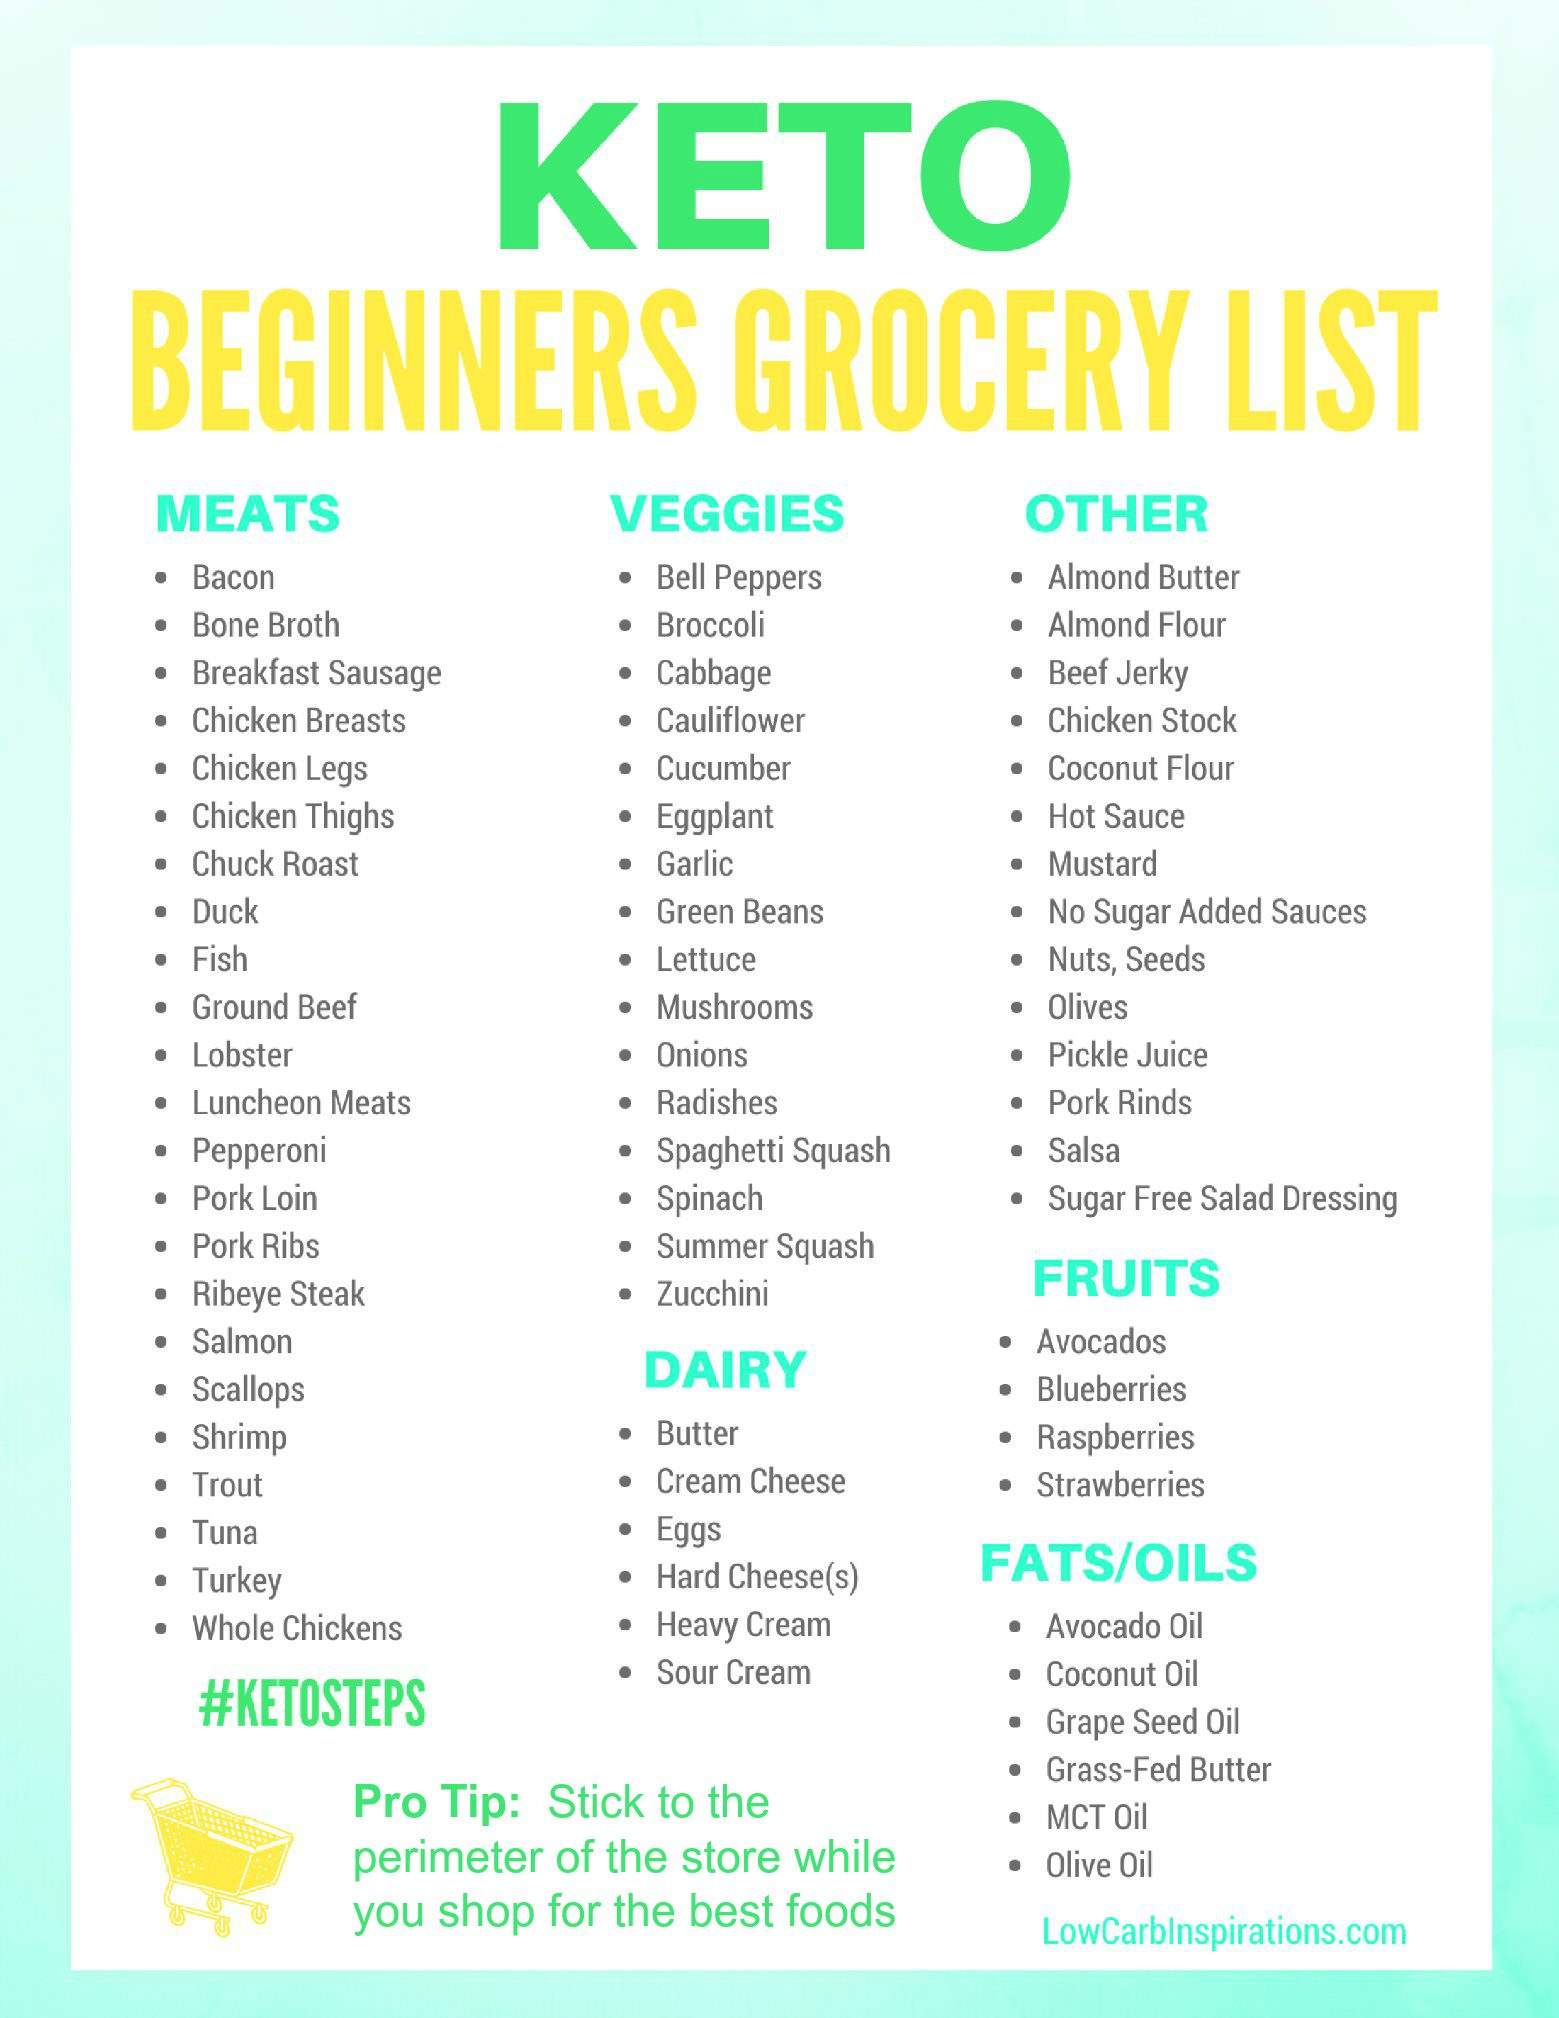 Shopping List For Keto Diet
 Keto Grocery List for Beginners iSaveA2Z